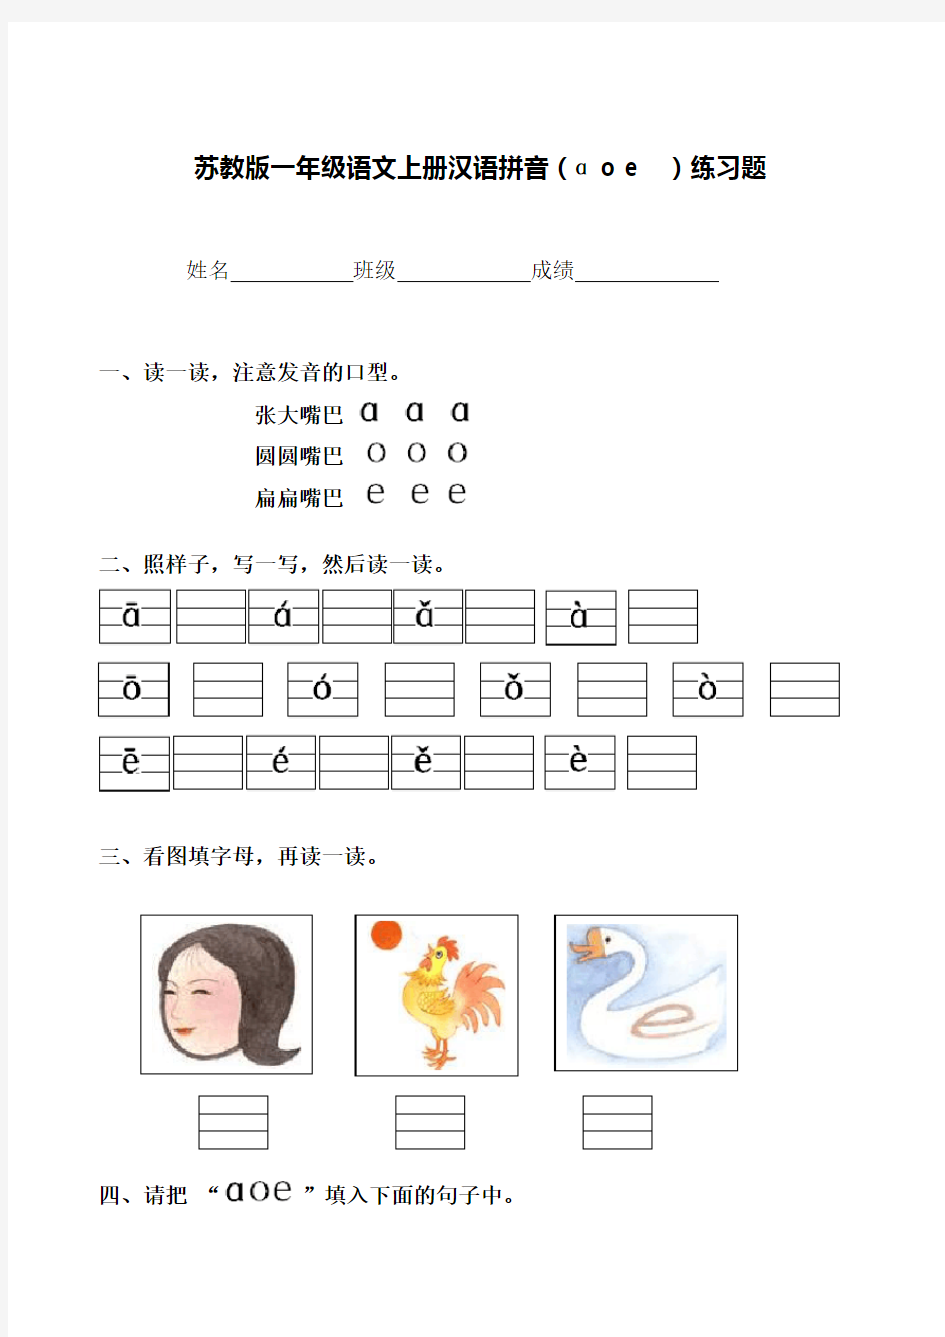 苏教版一年级语文上册汉语拼音(AOE)练习题